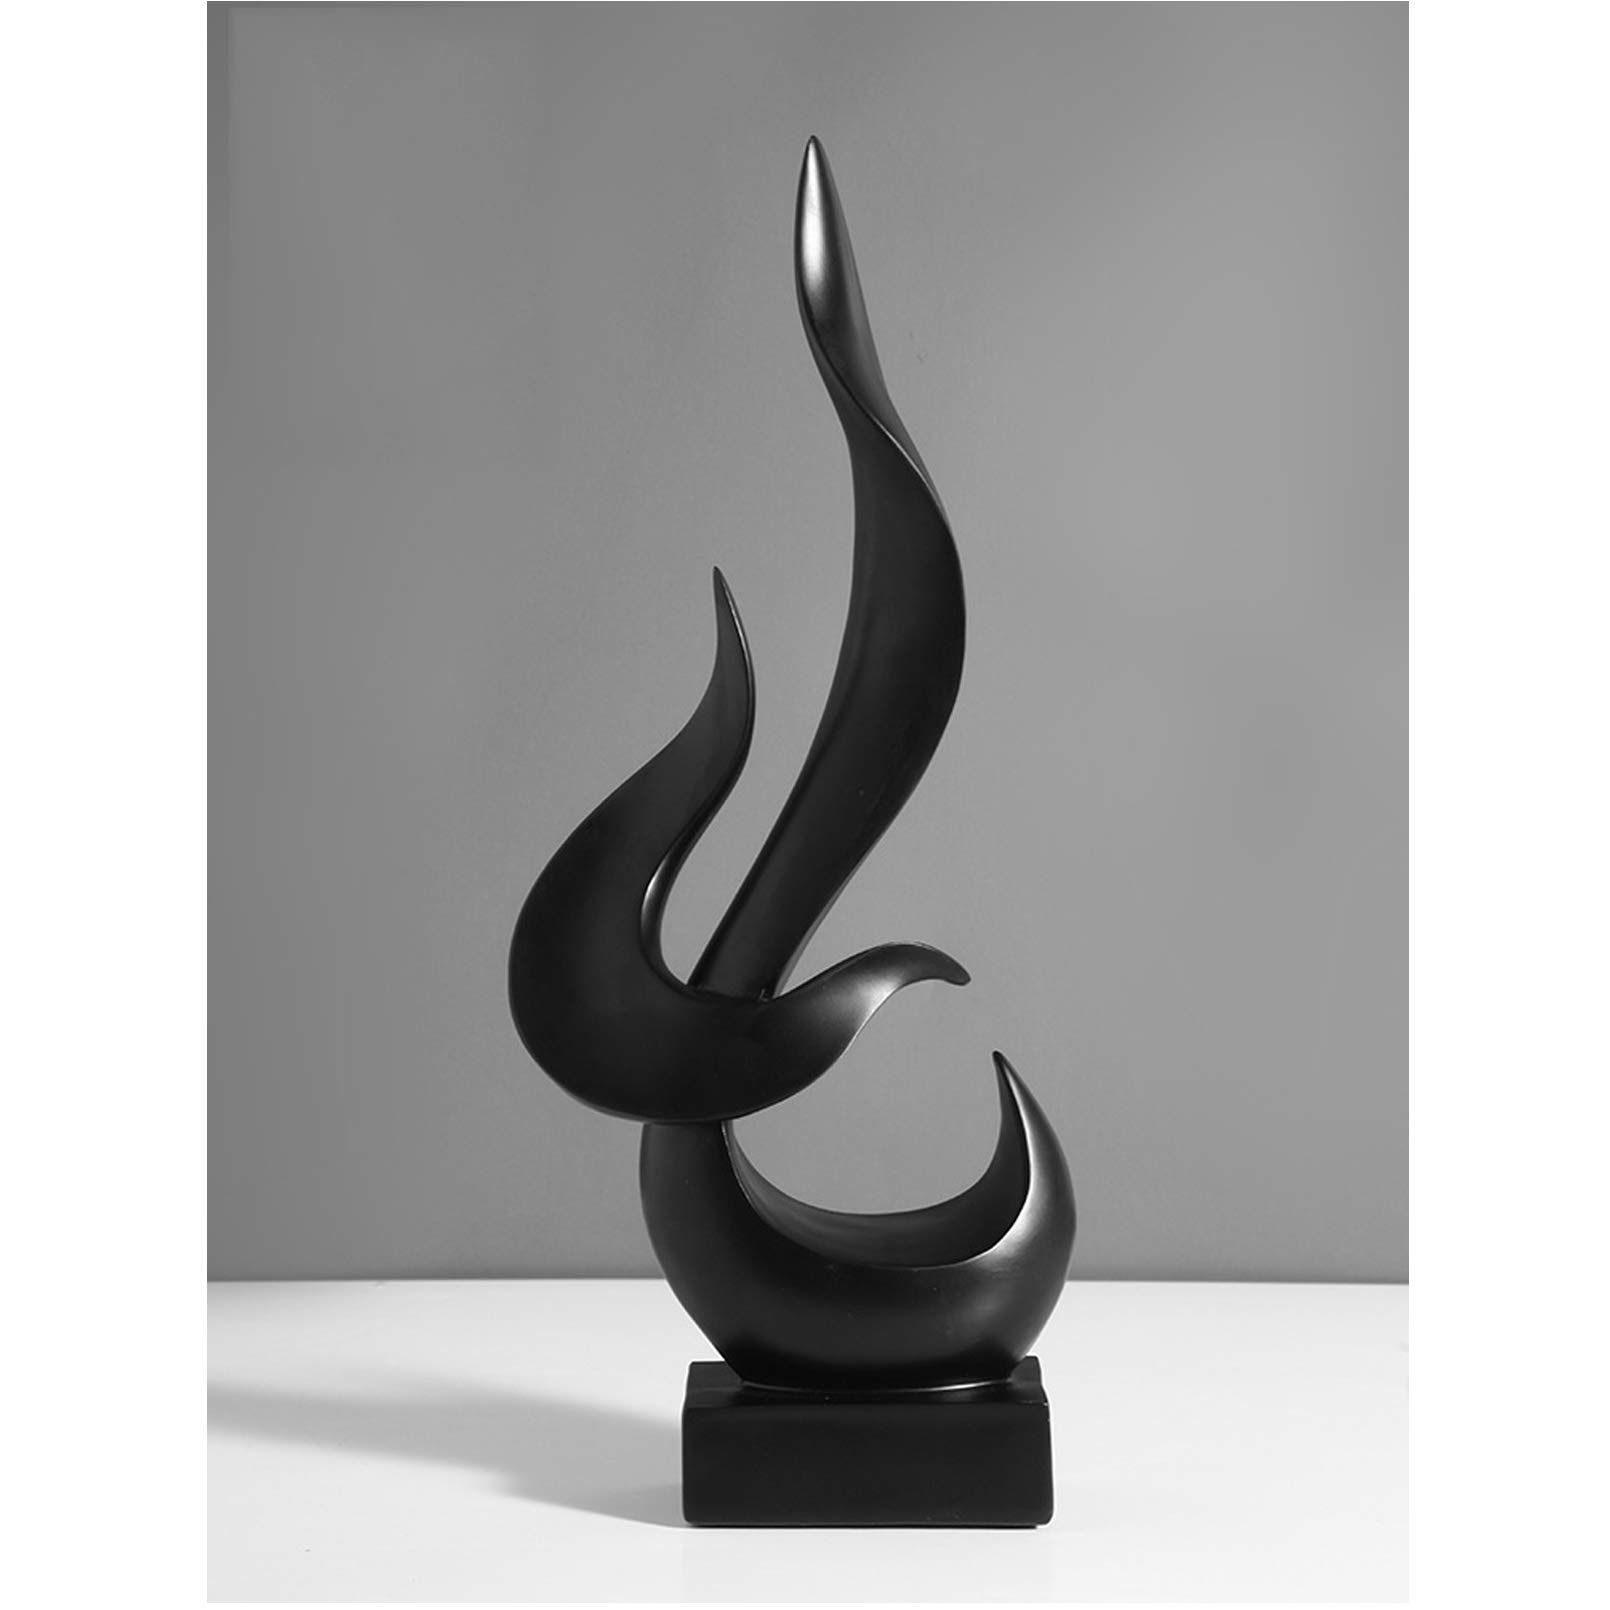 Pevfeciy Schwarze Flamme Skulptur deko für Wohnzimmer und Büro,Skulptur deko Modern Abstrakte Statue aus Harz, 41 cm hoch